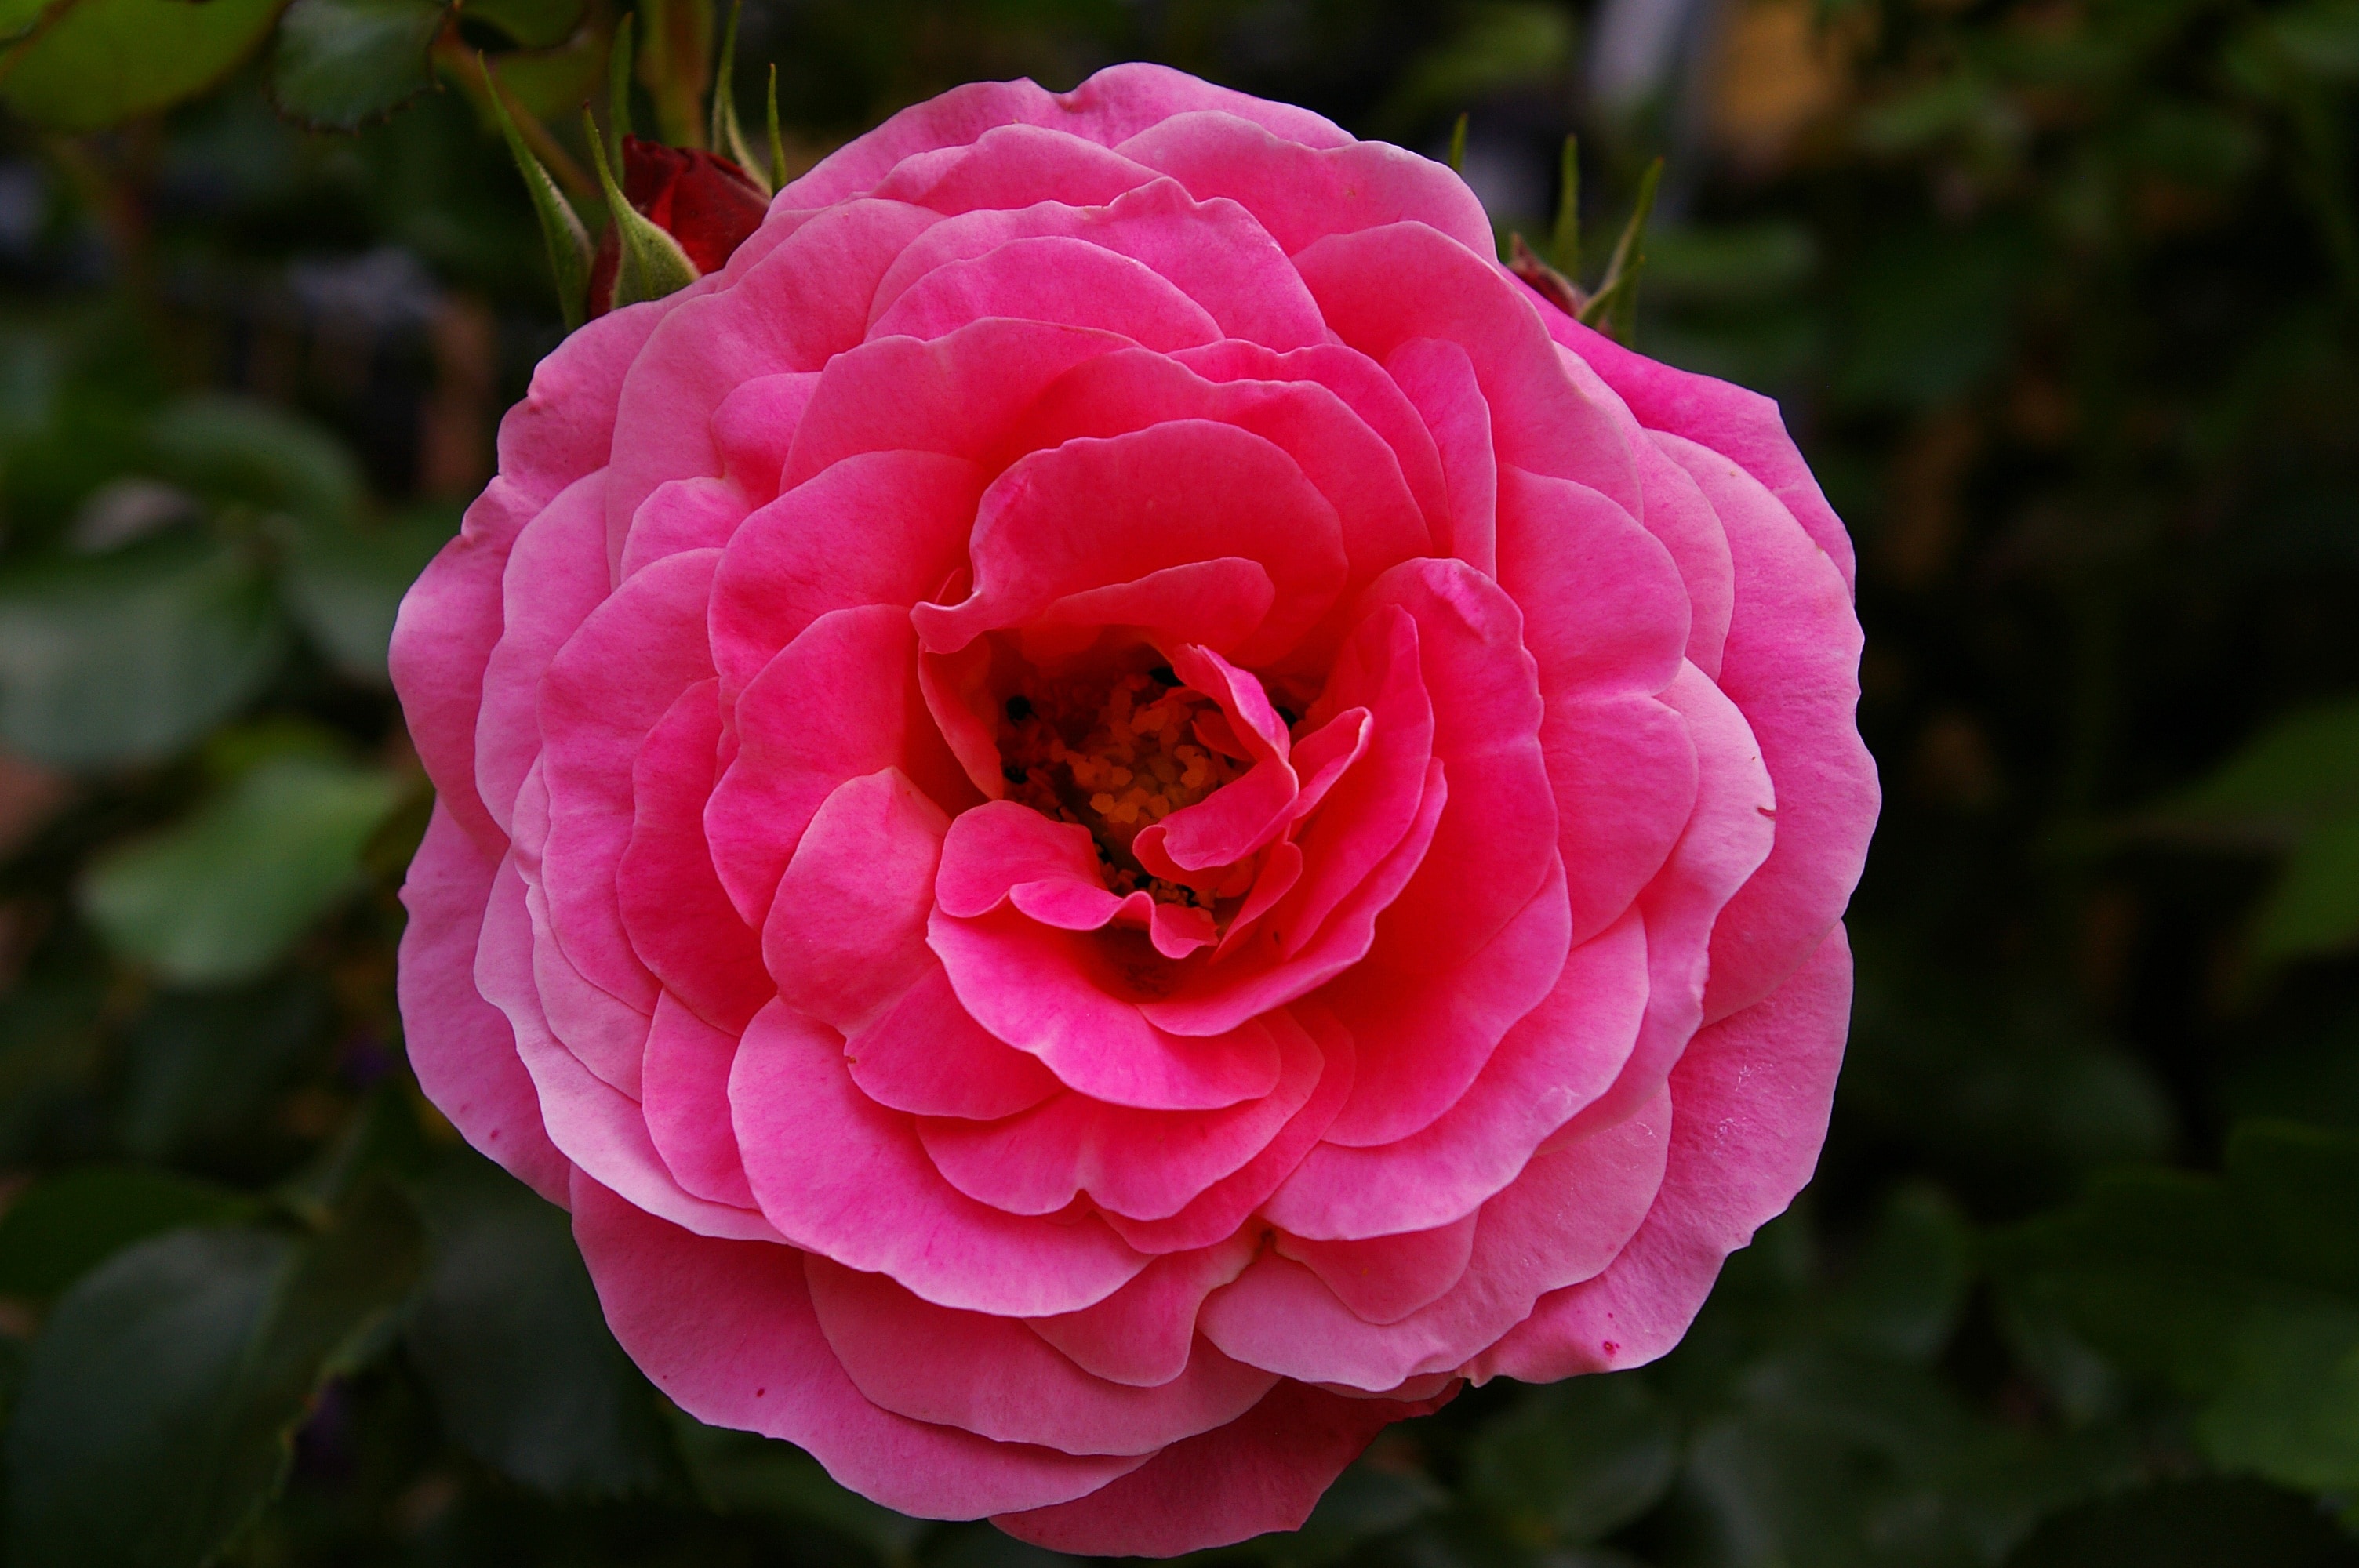 Scented Rose, Pink Rose, Rose, flower, pink color